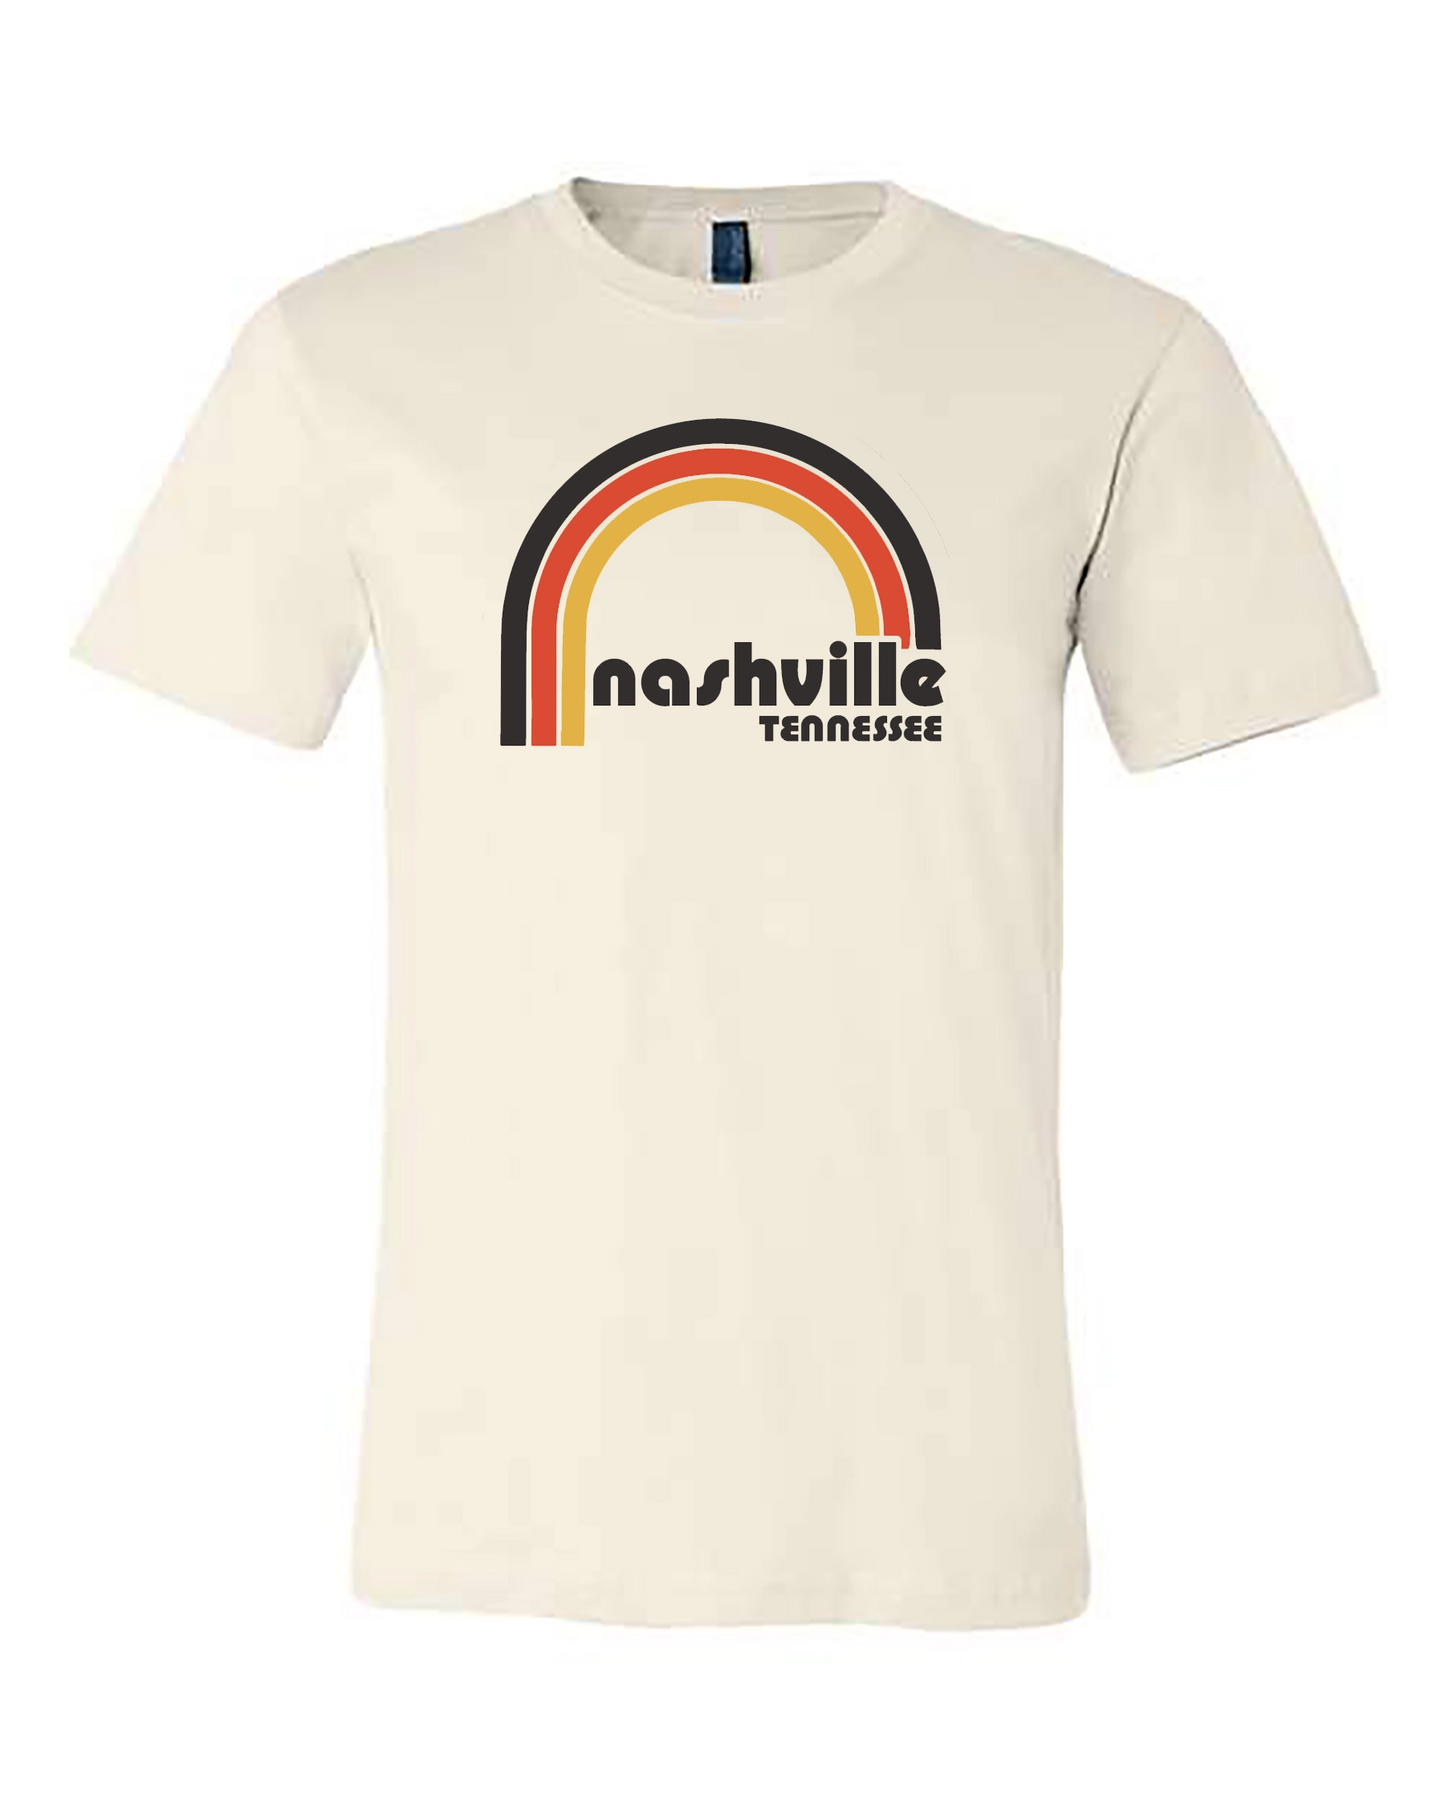 Nashville Happy Days Shirt